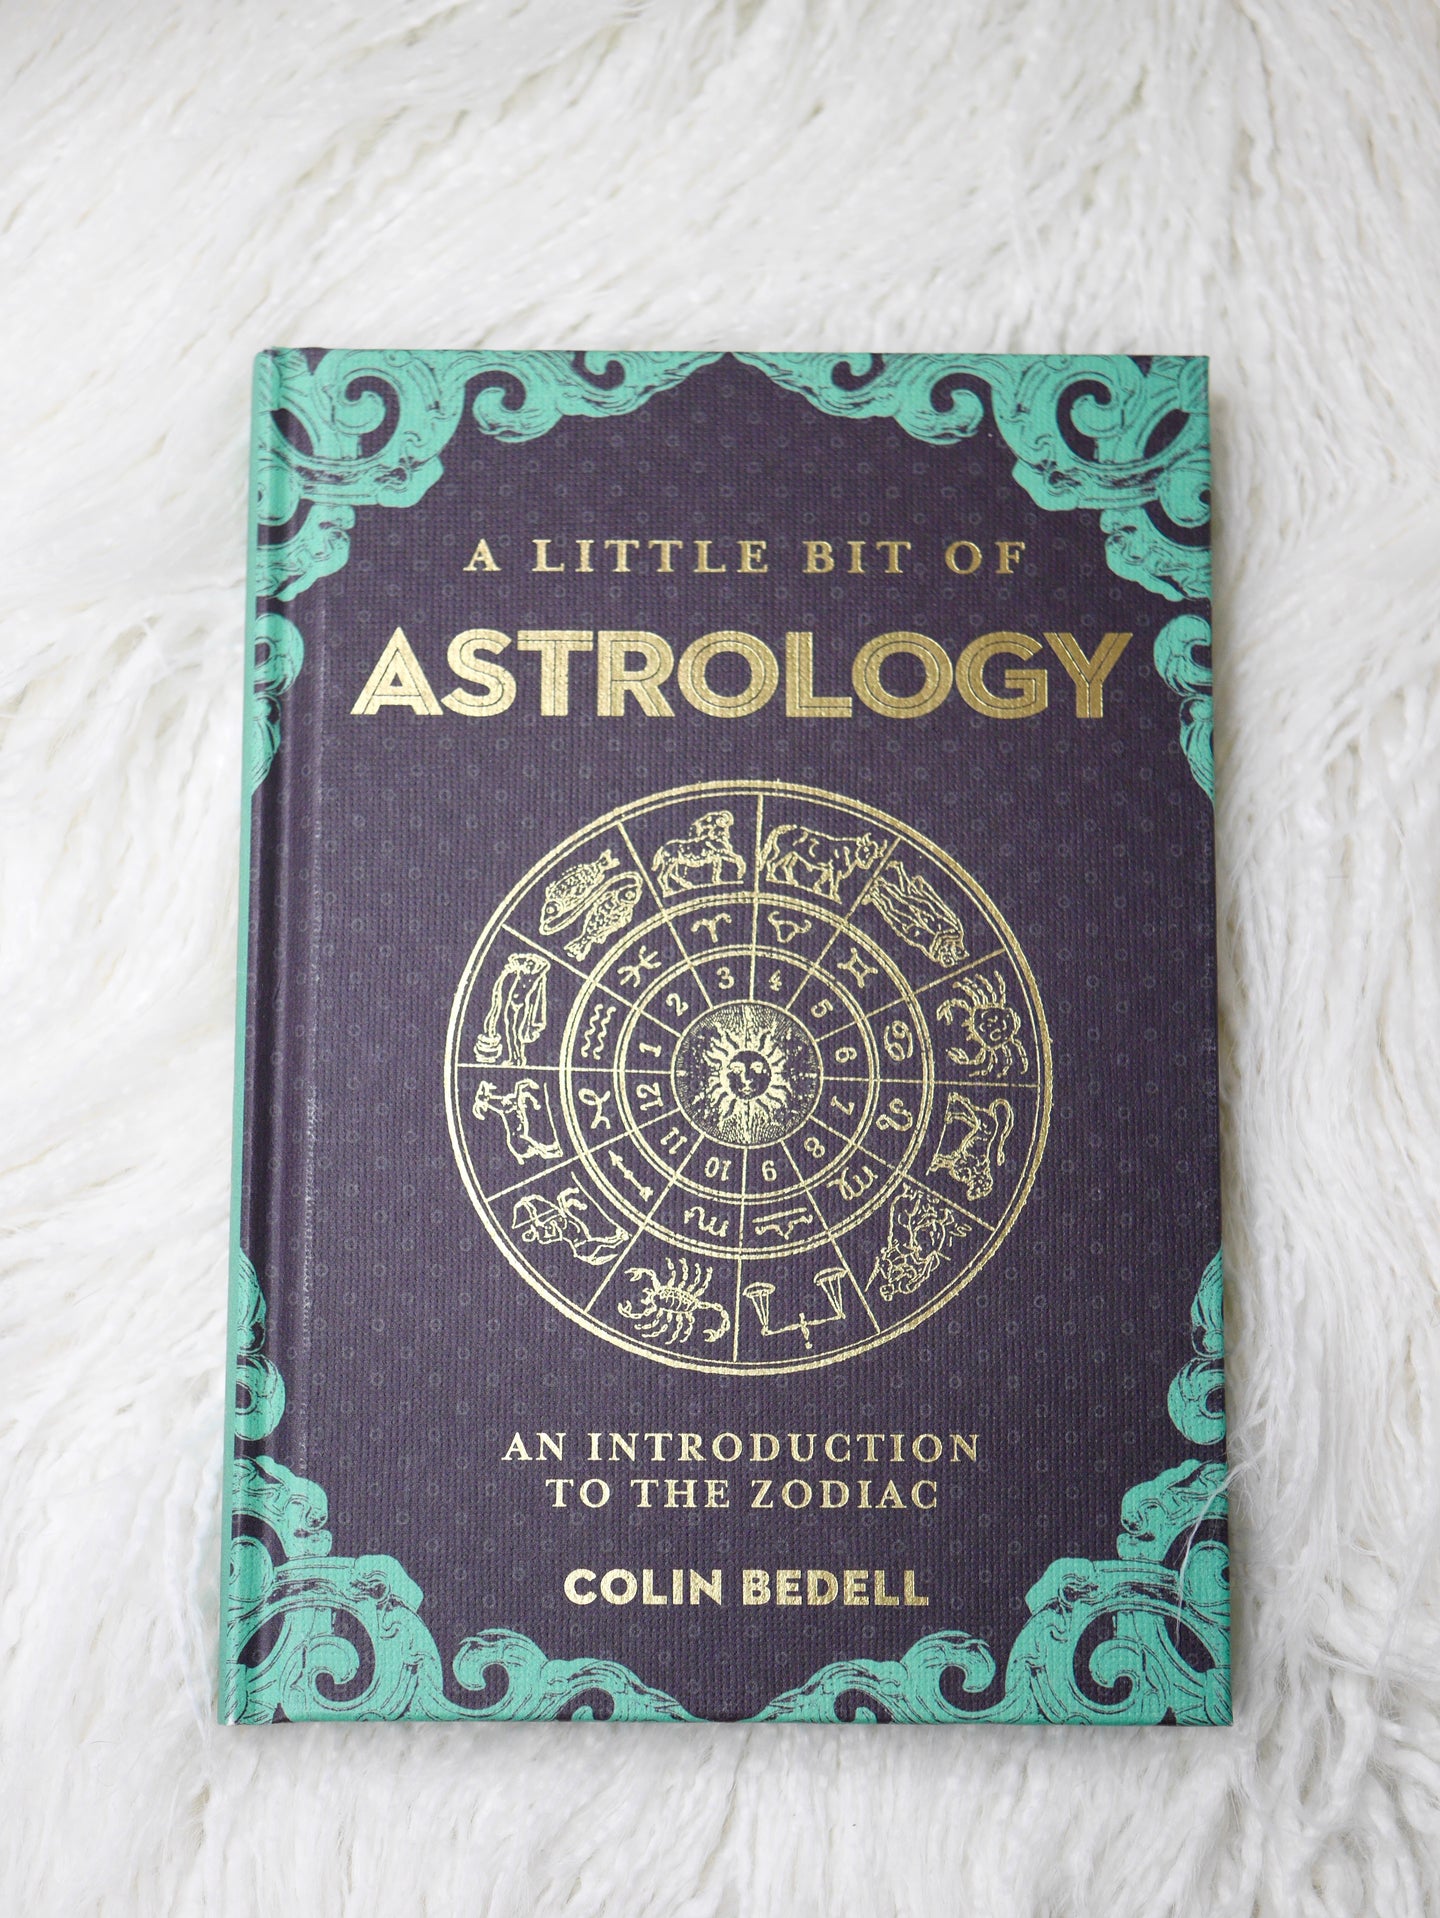 A little bit of Astrology